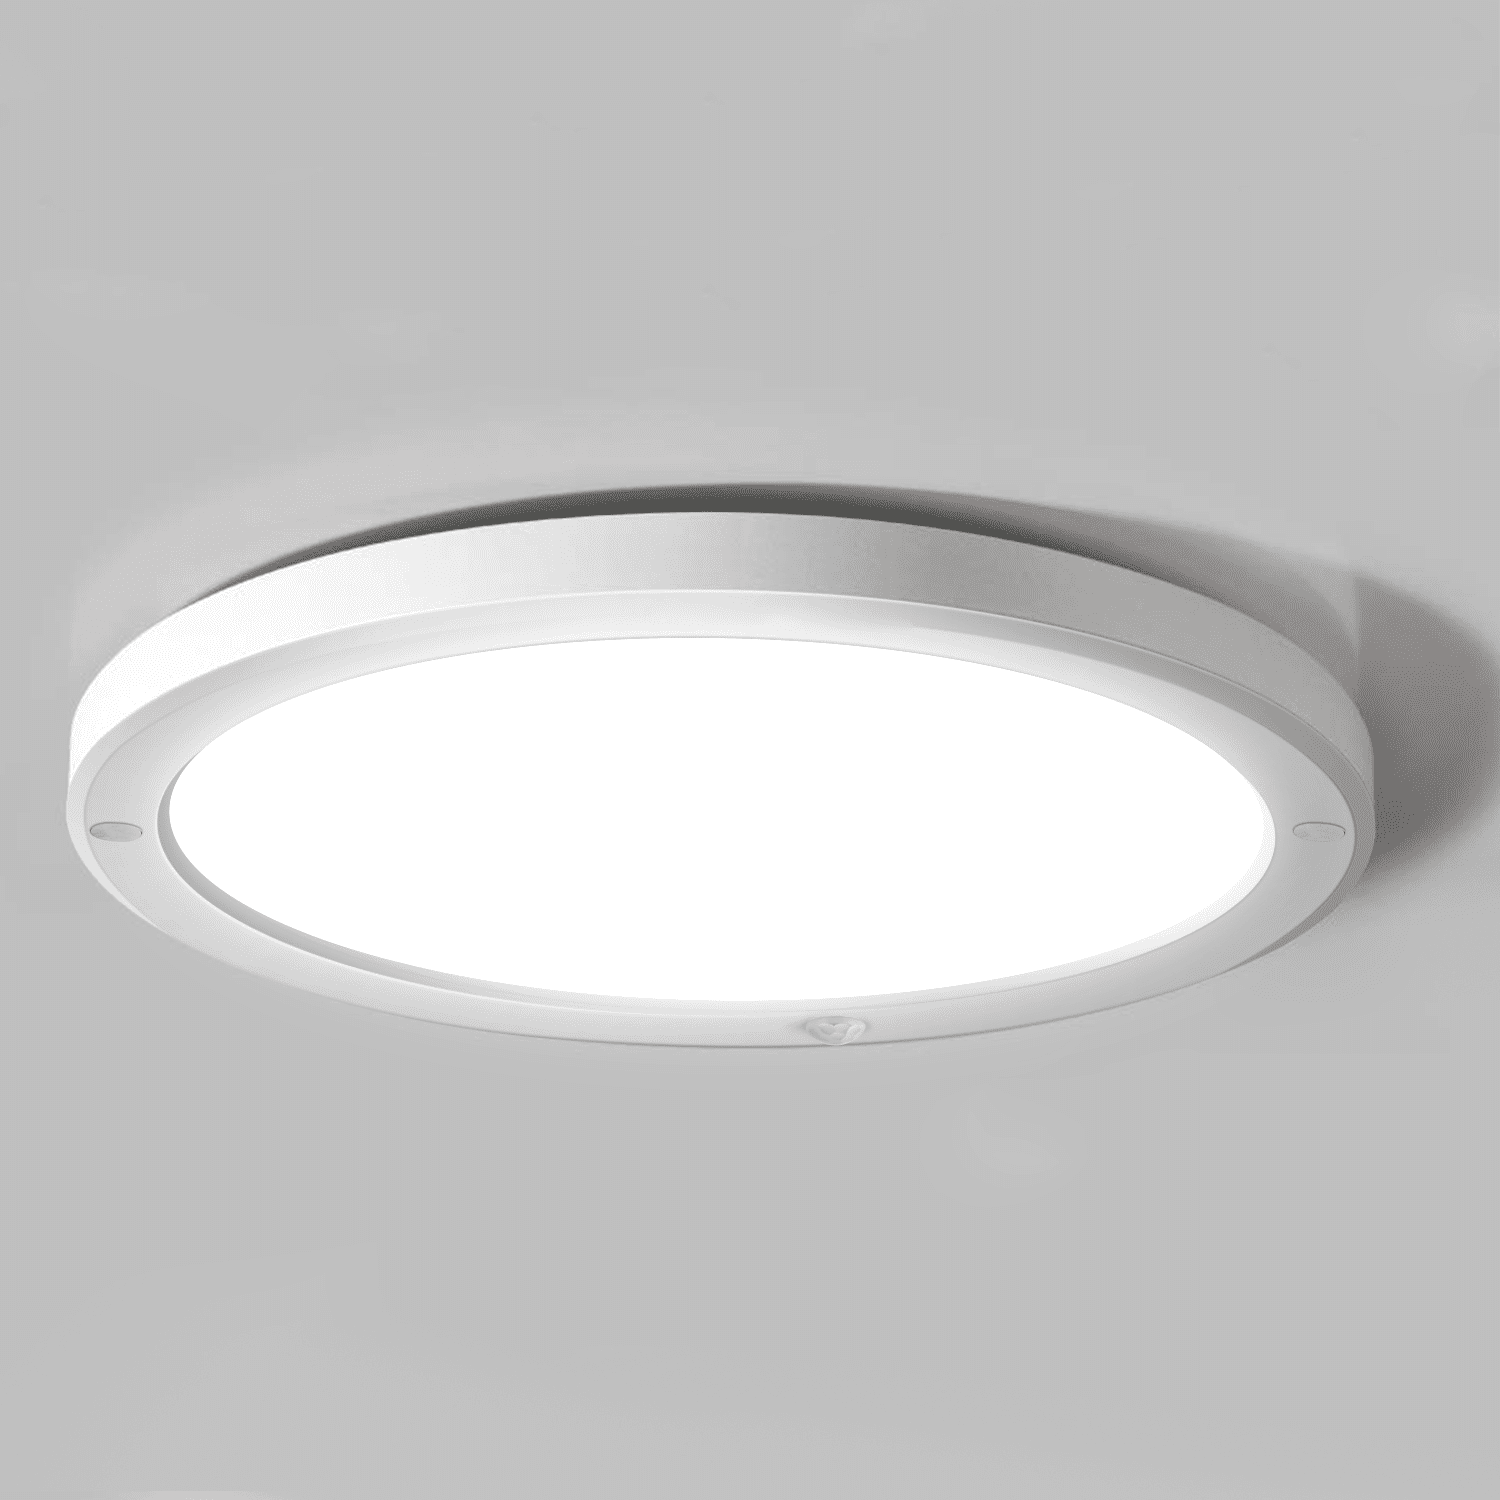 12x 2FT 60cm 24" LED Batten Tube Light Slimline Surface Mount Ceiling Panel Lamp 